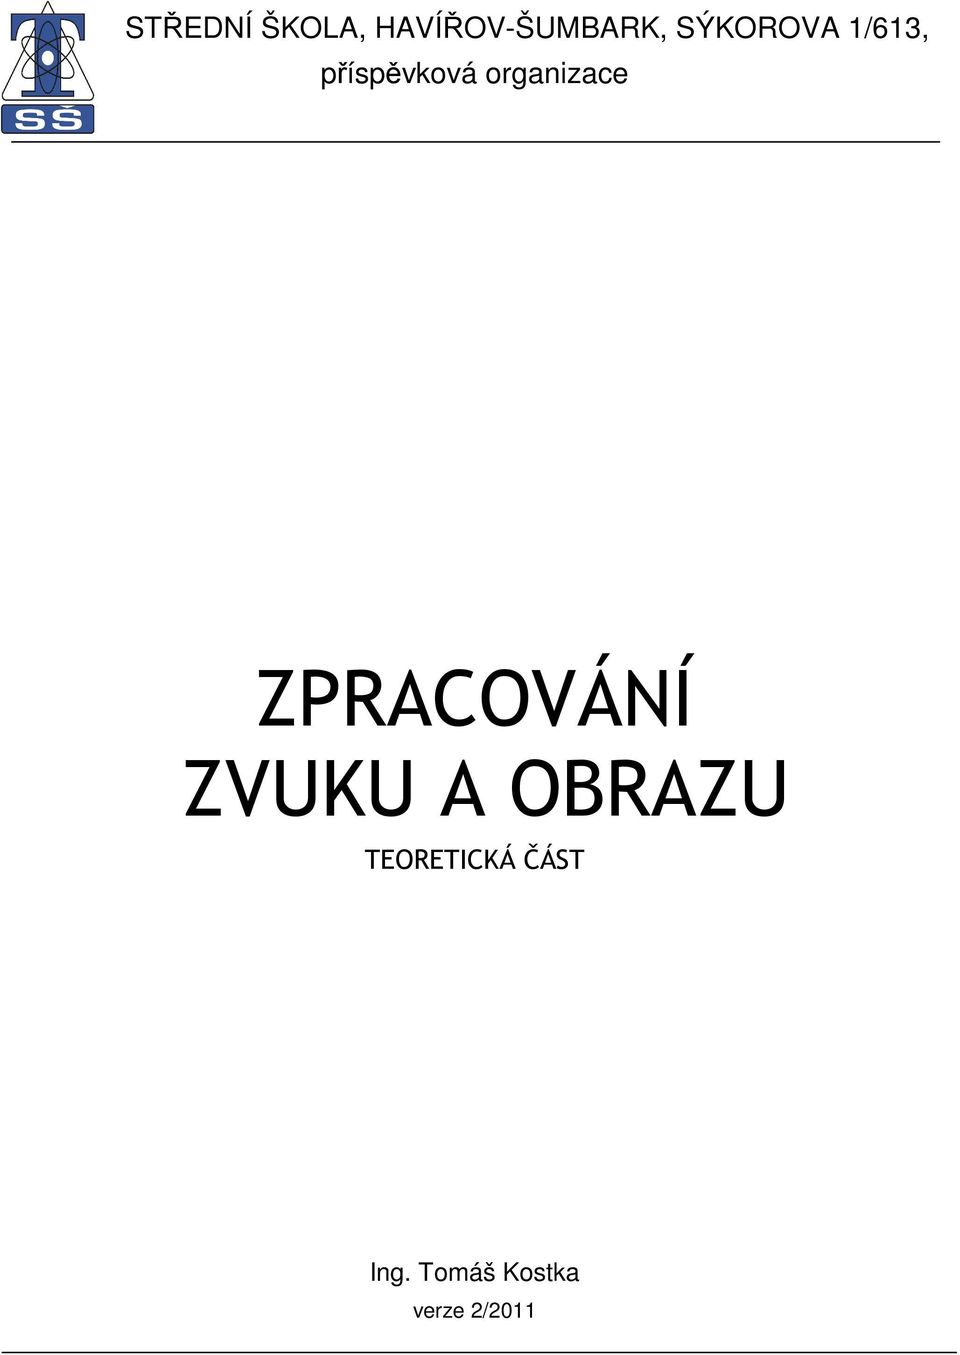 organizace ZPRACOVÁNÍ ZVUKU A